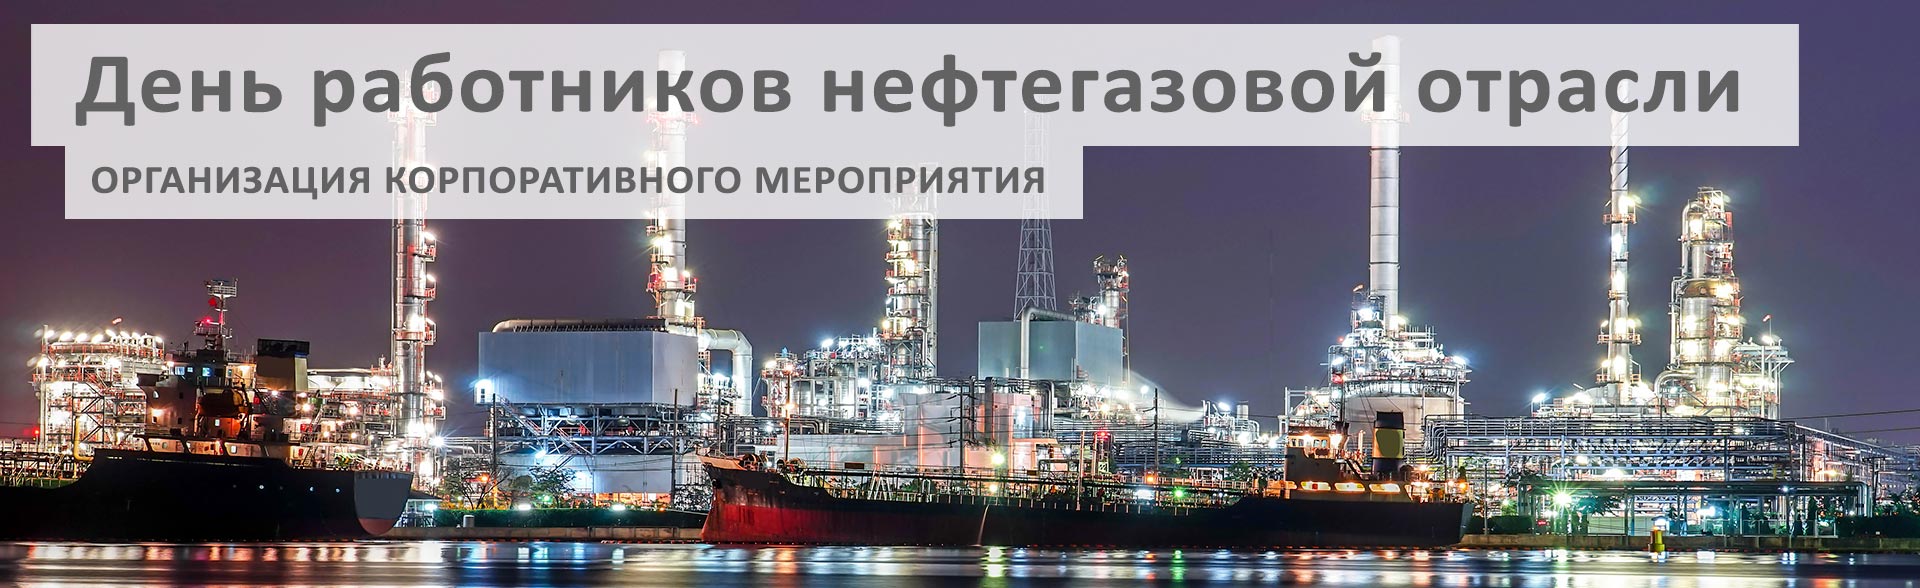 Организация дня работников нефтегазовой отрасли